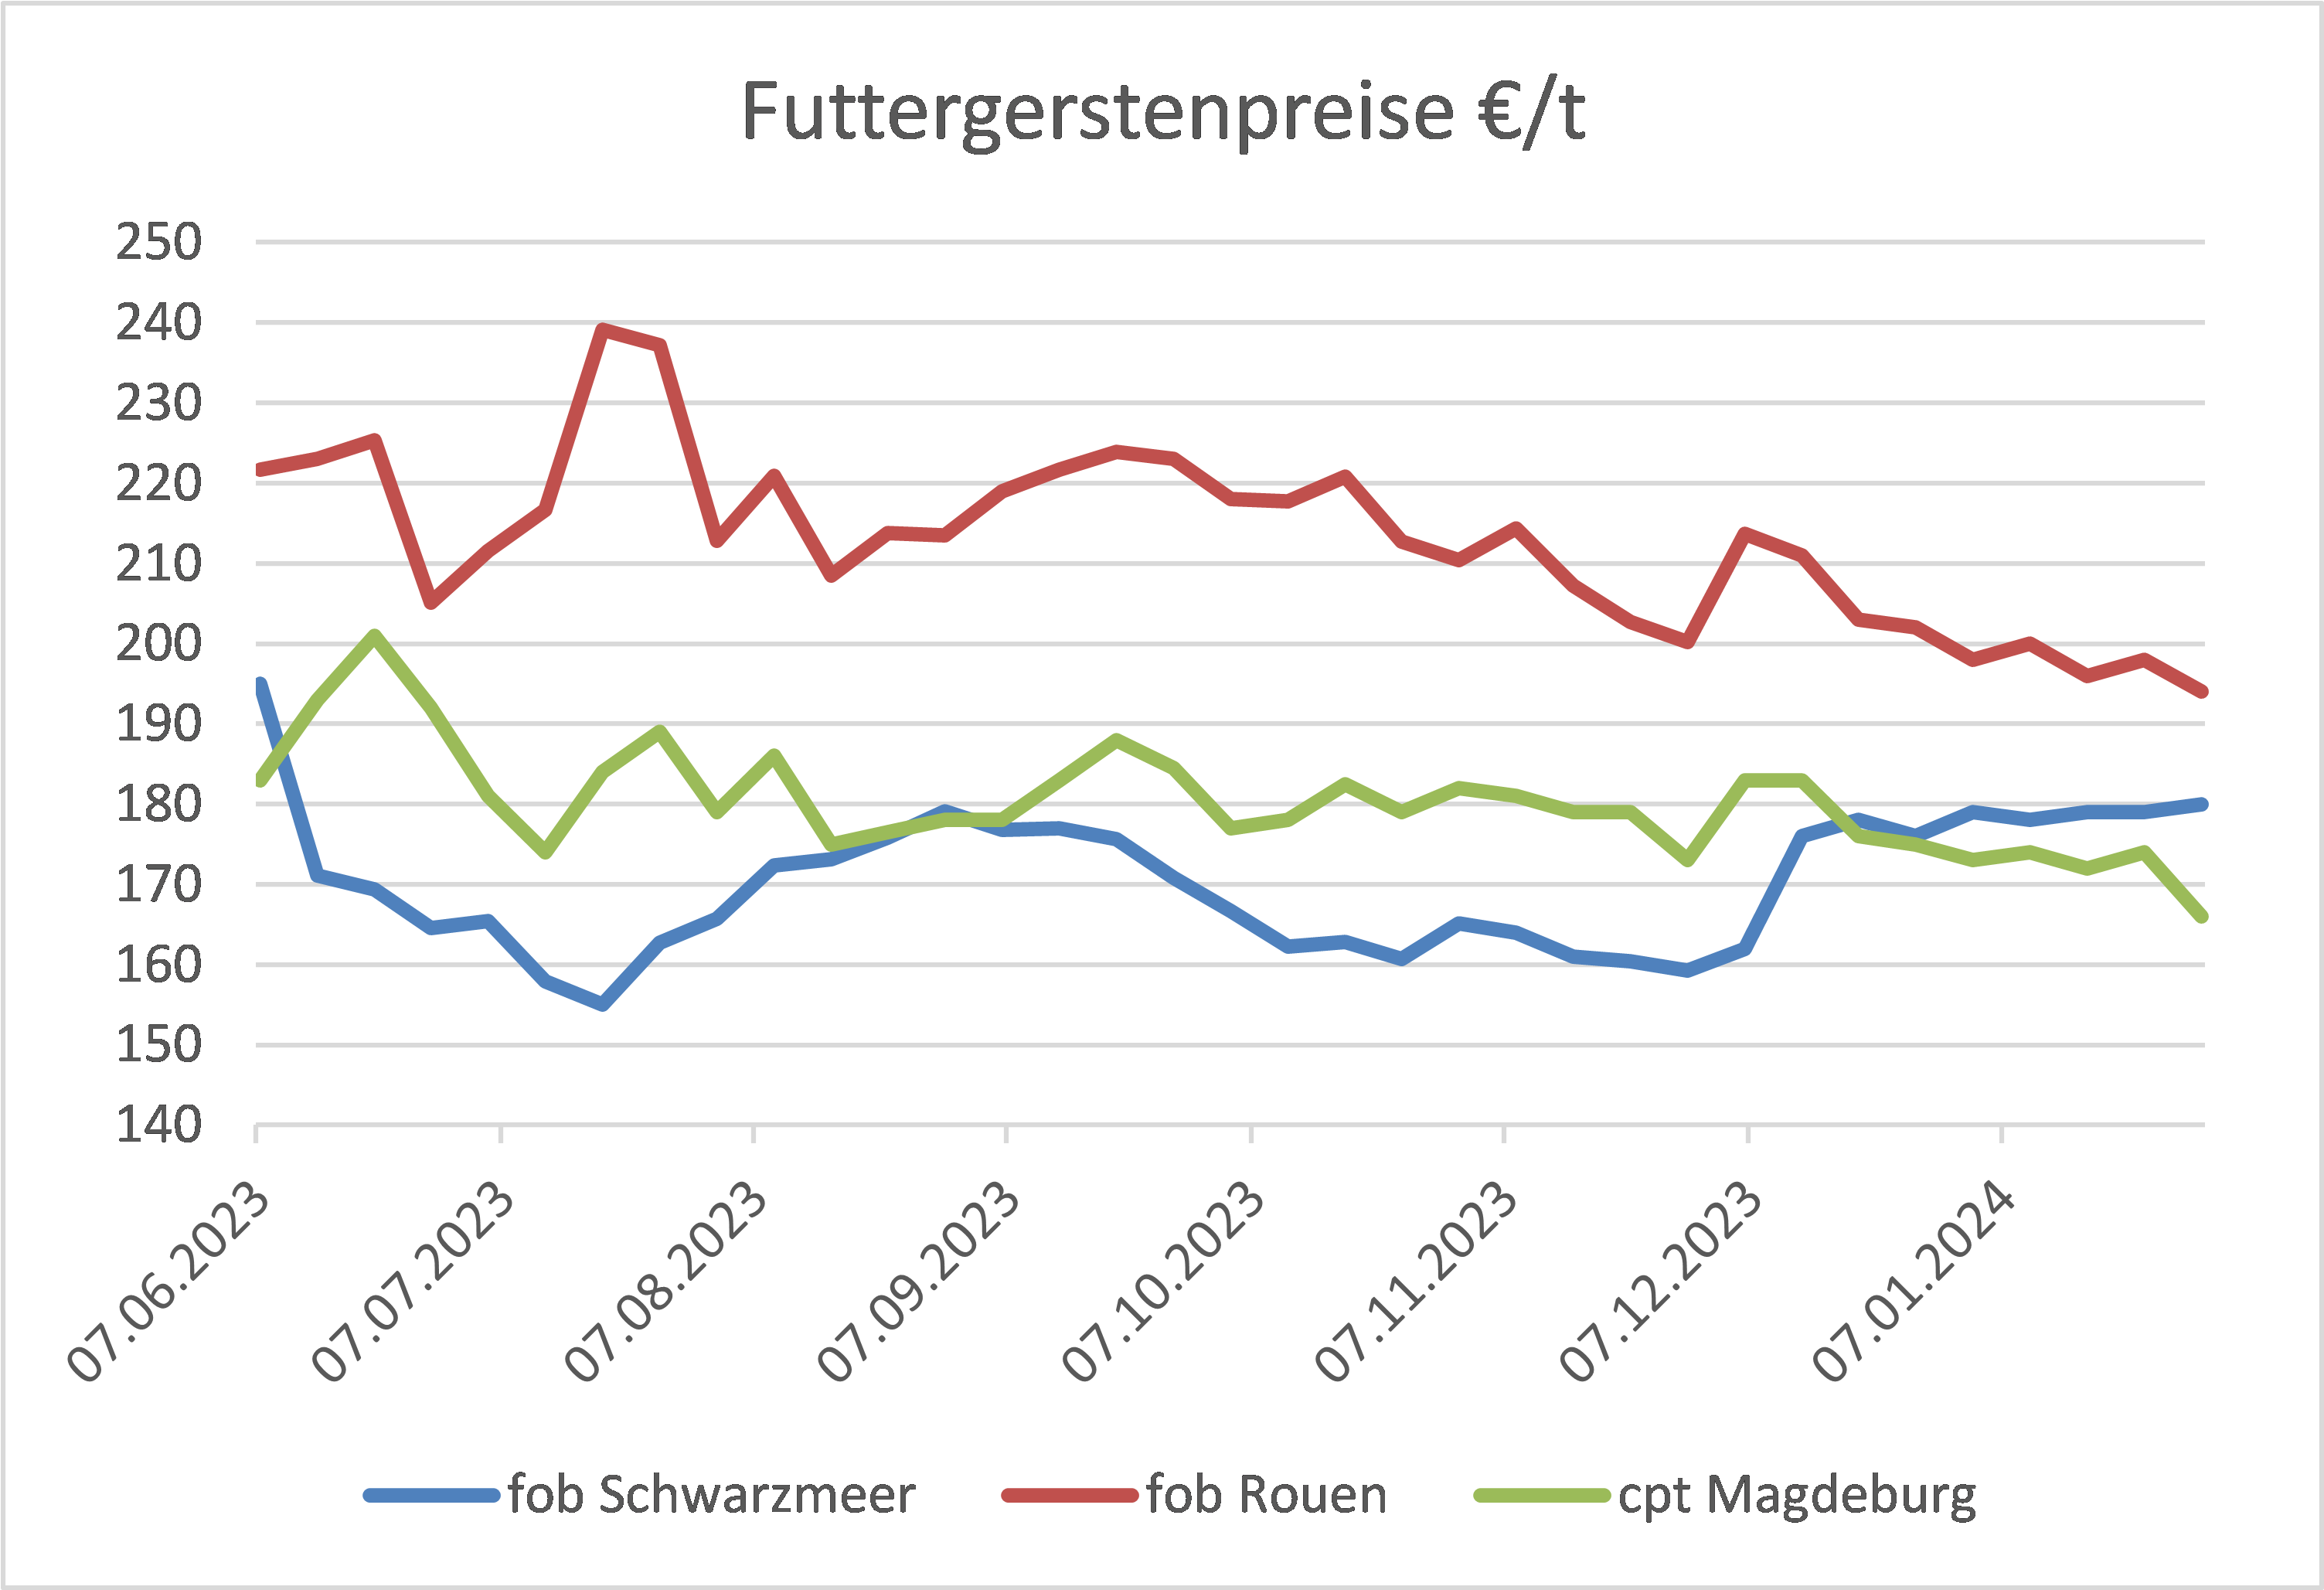 Preisdiagramm der Futtergerstenpreise in Euro pro Tonne mit Markttrends von fob Schwarzmeer, fob Rouen und cpt Magdeburg.